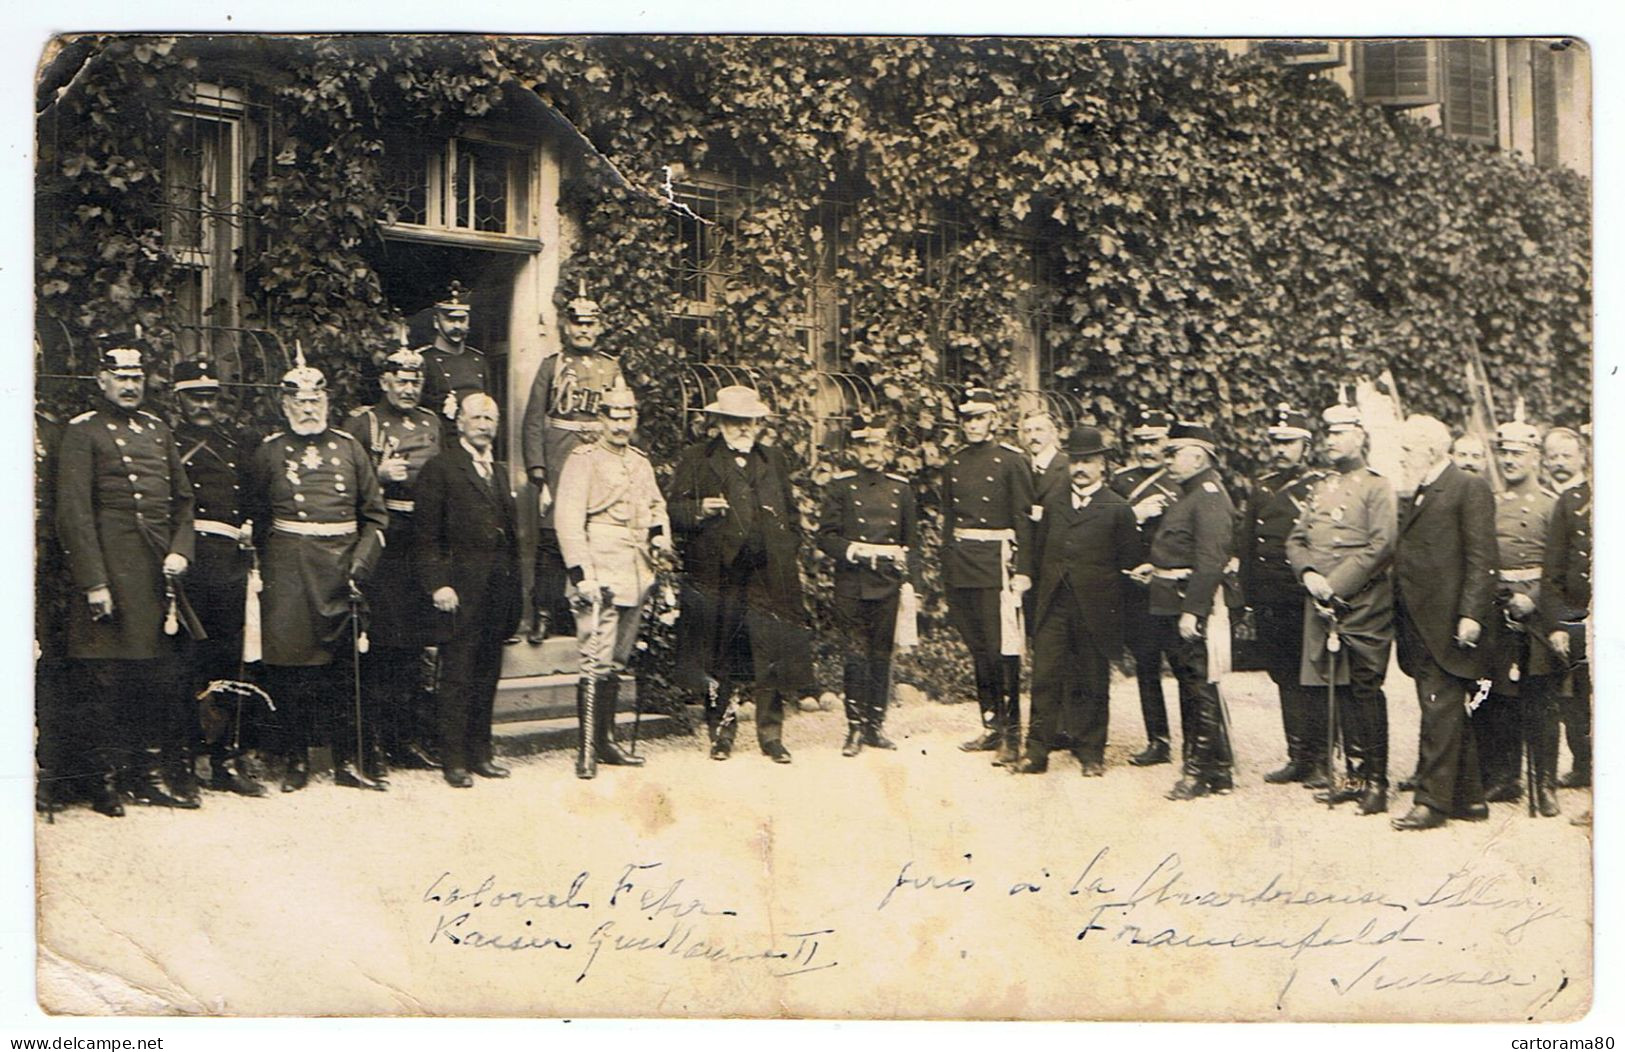 Warth-Weiningen / Carte-photo / Guillaume II Et Le Colonel Fehr / Chartreuse D'Ittingen, Le 4 Septembre 1912 / Etat - Ereignisse